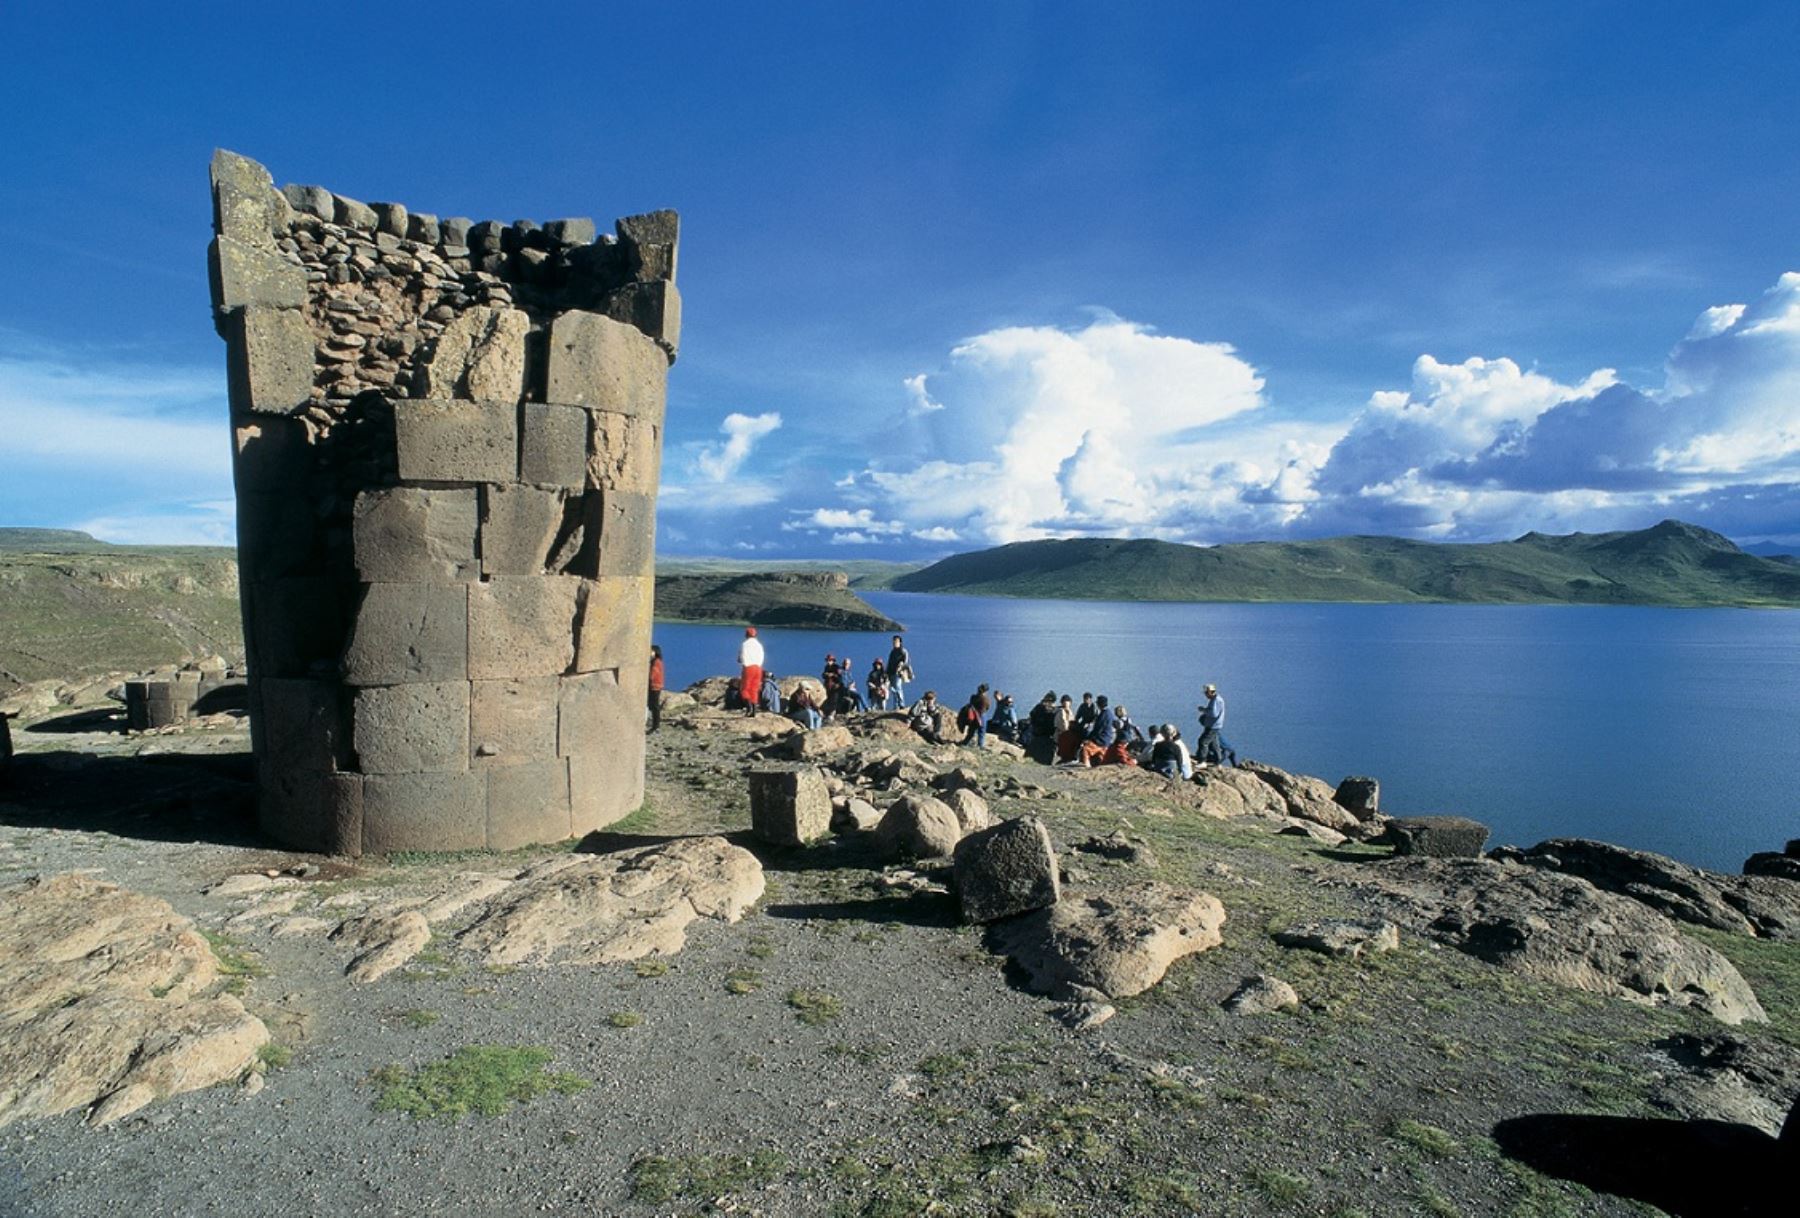 Reserva Nacional del Titicaca cumple 40 años y preserva una biodiversidad singular. ANDINA/archivo